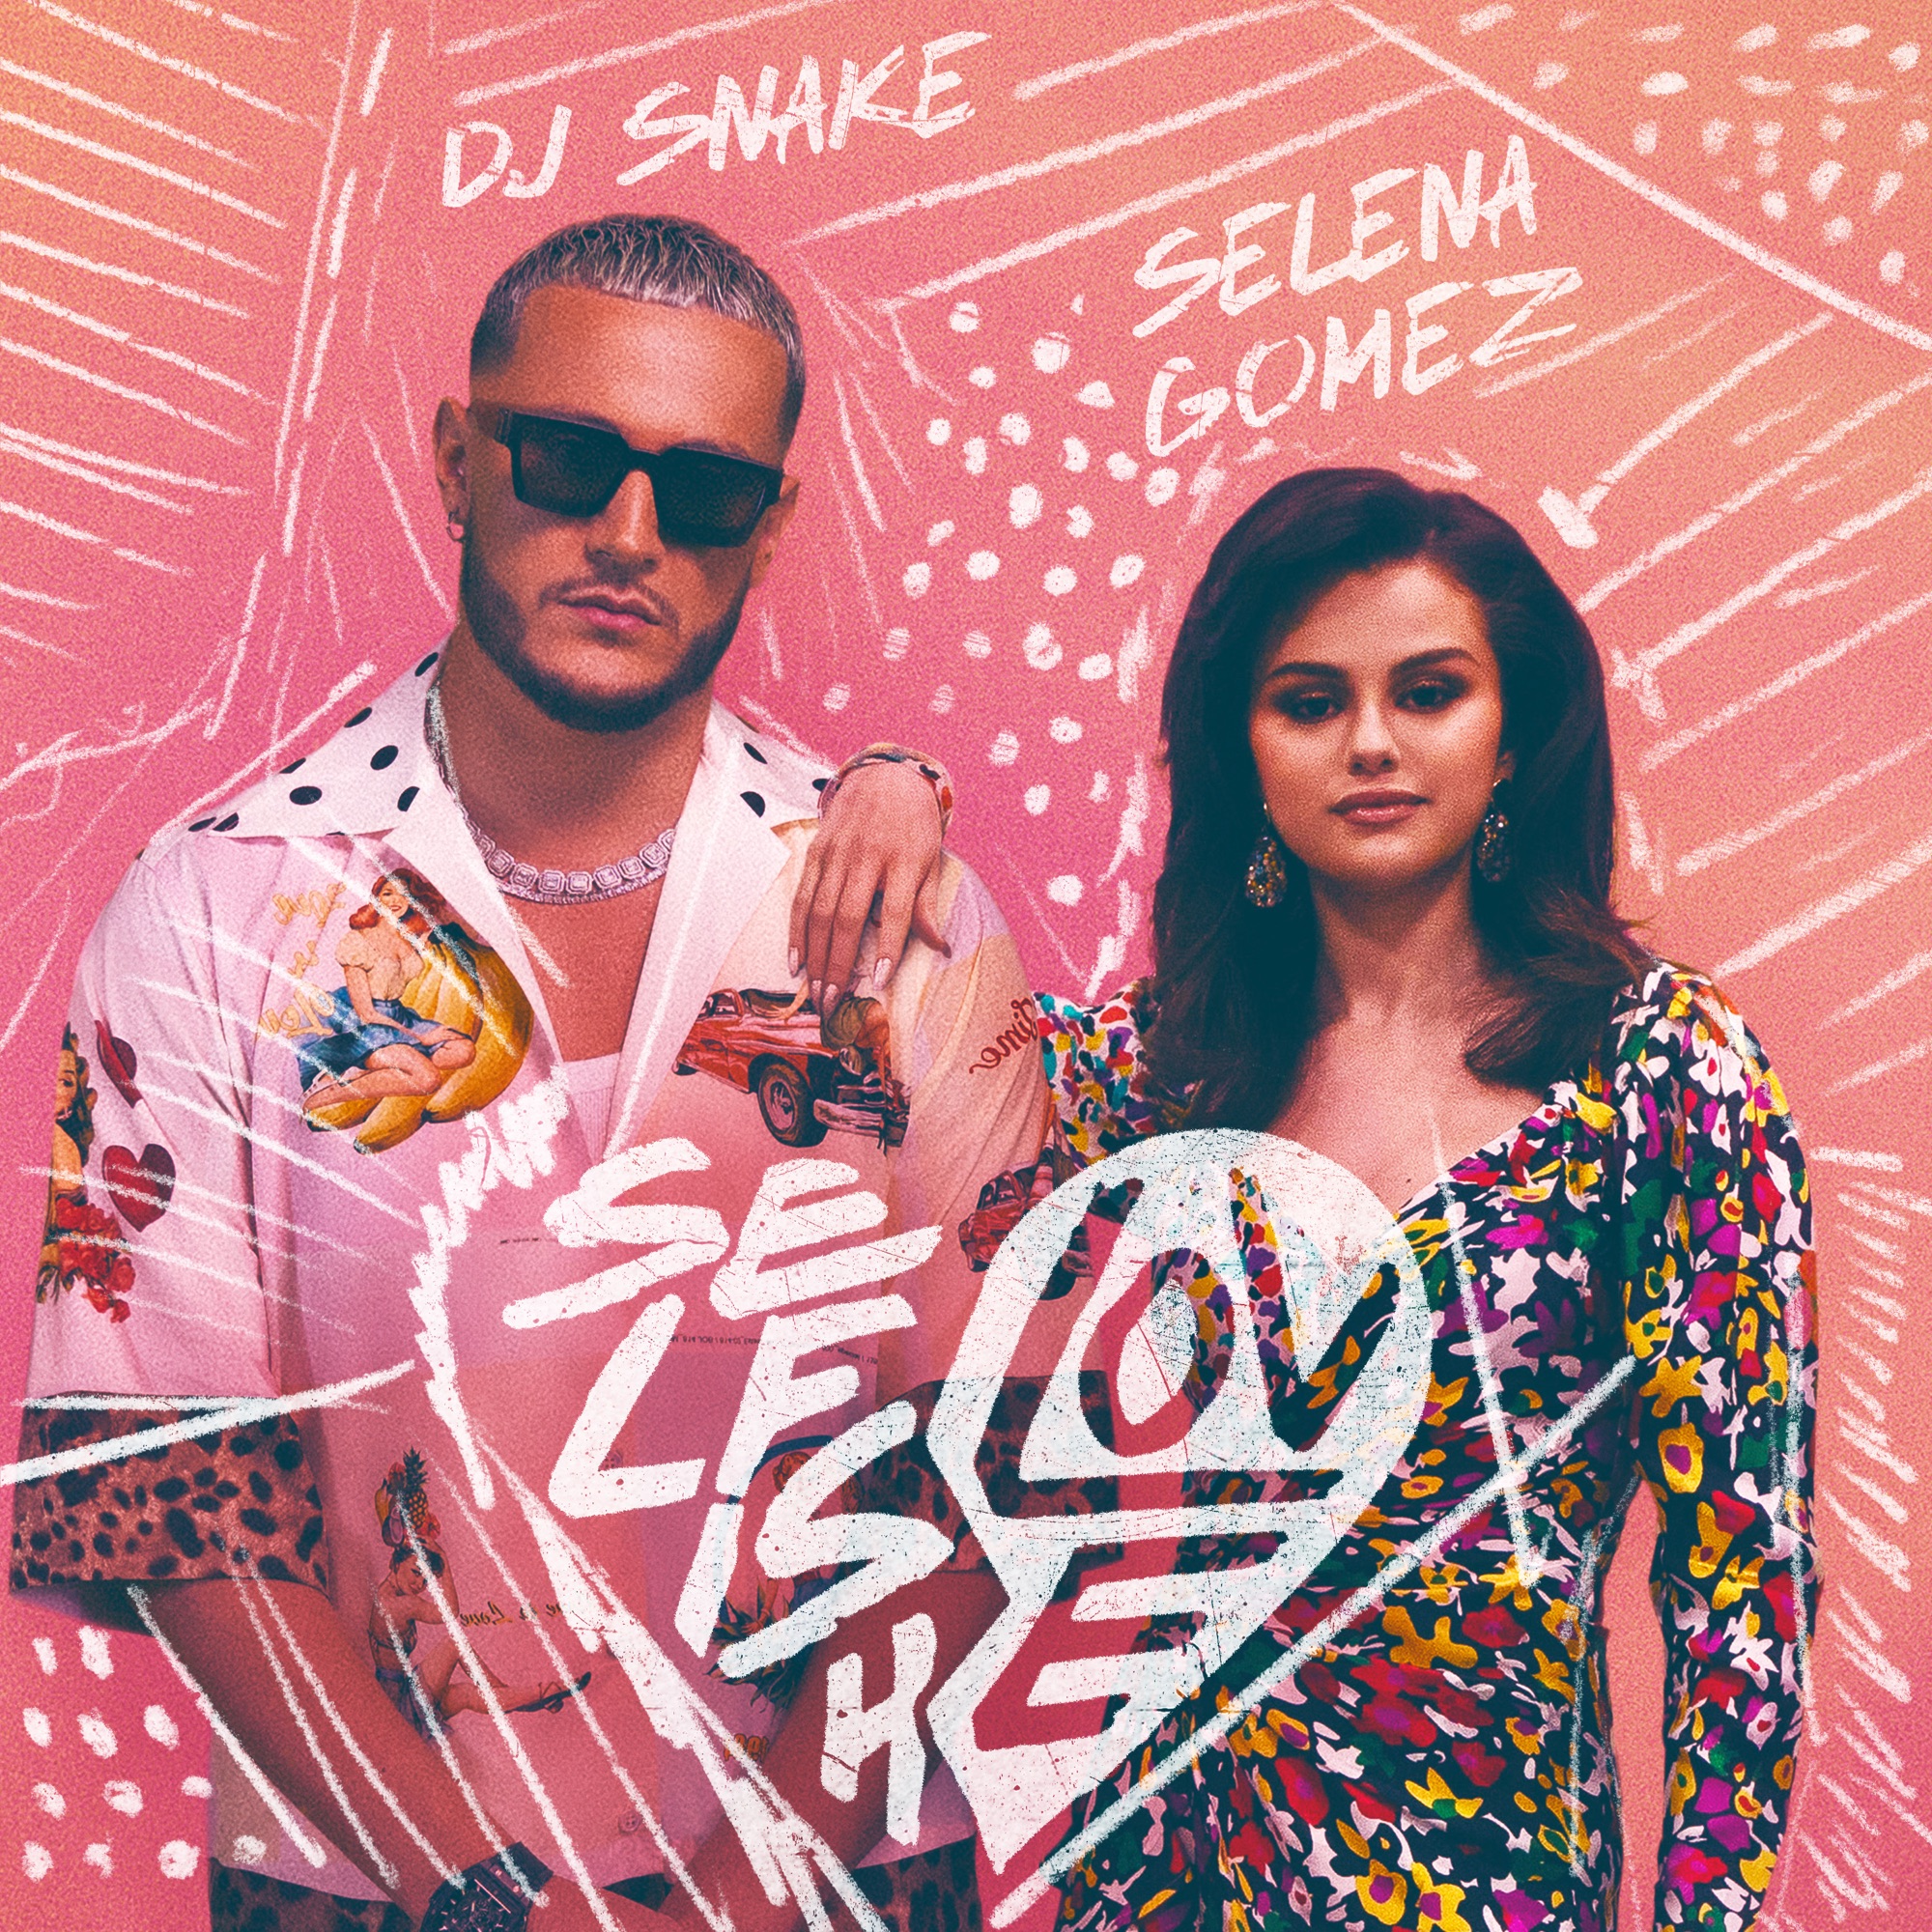 DJ Snake & Selena Gomez - Selfish Love - Single